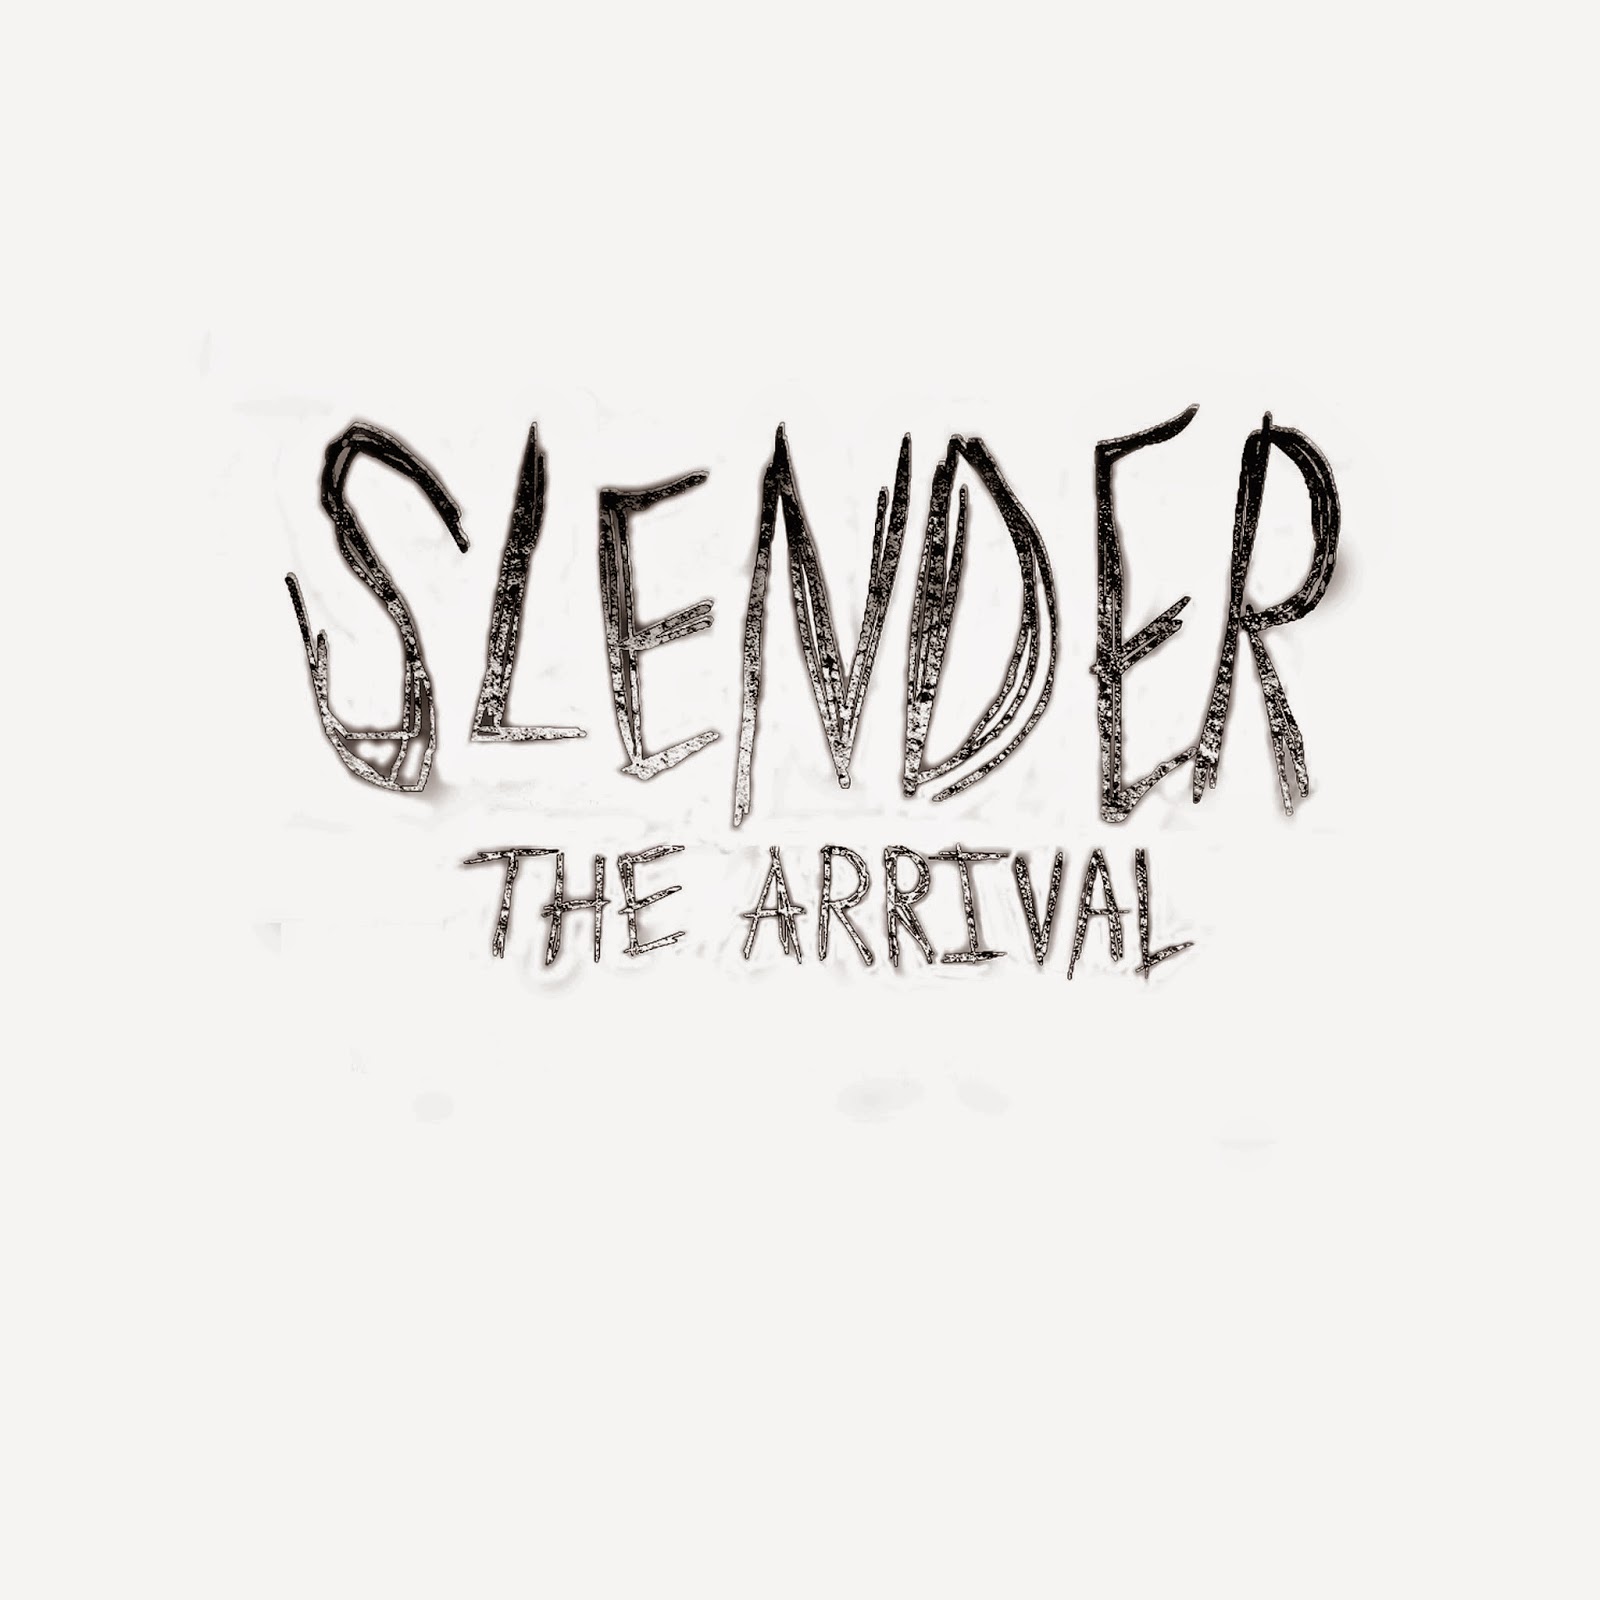 slender ps4 download